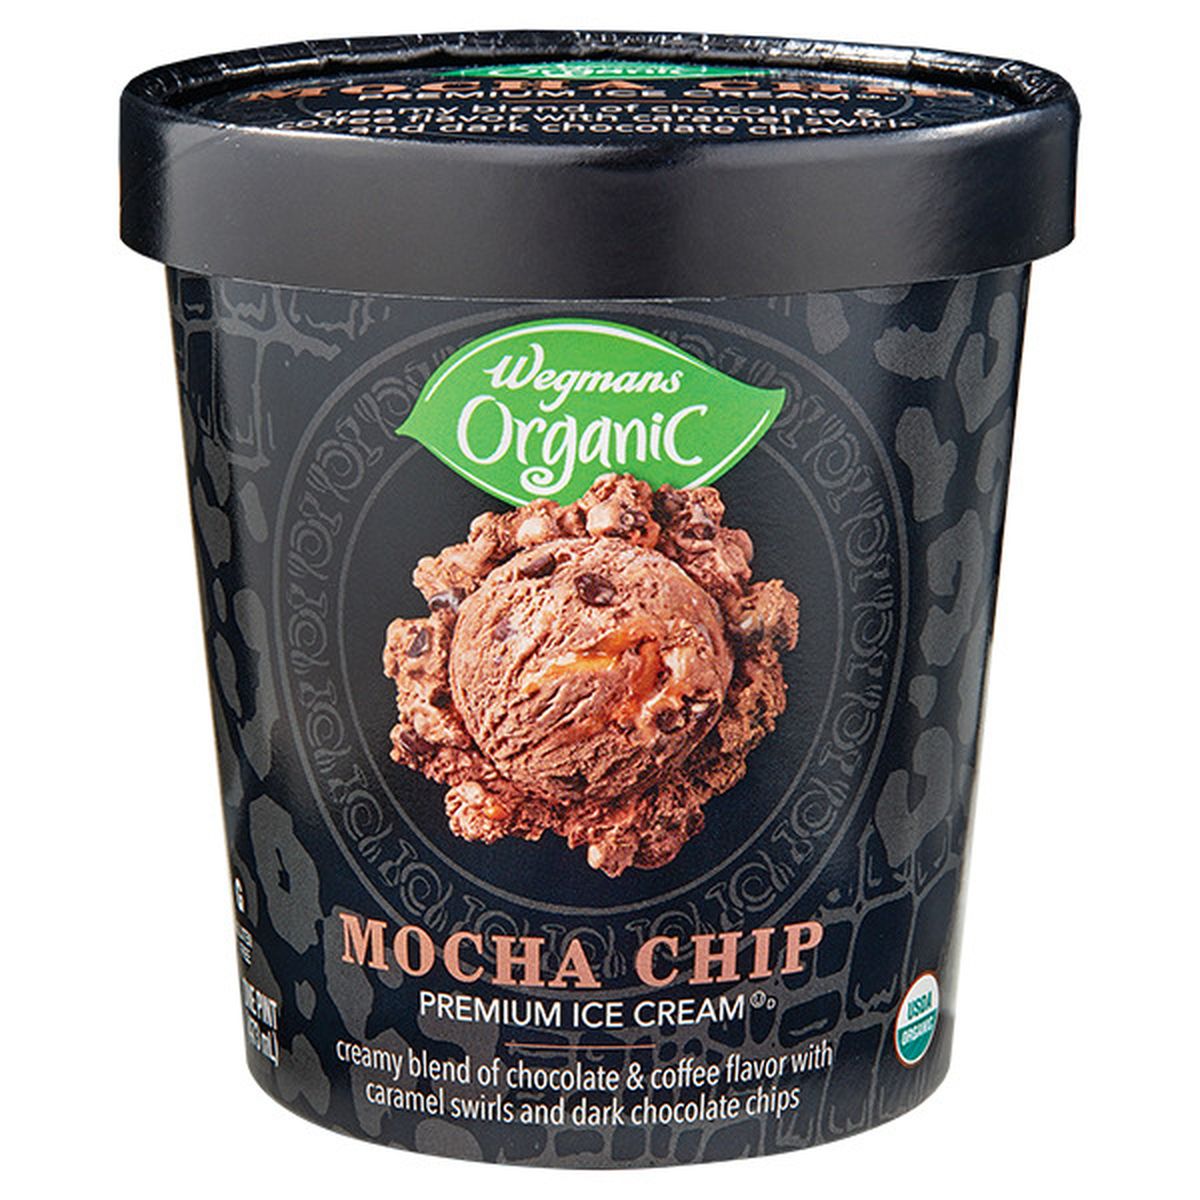 Calories in Wegmans Organic Mocha Chip Premium Ice Cream